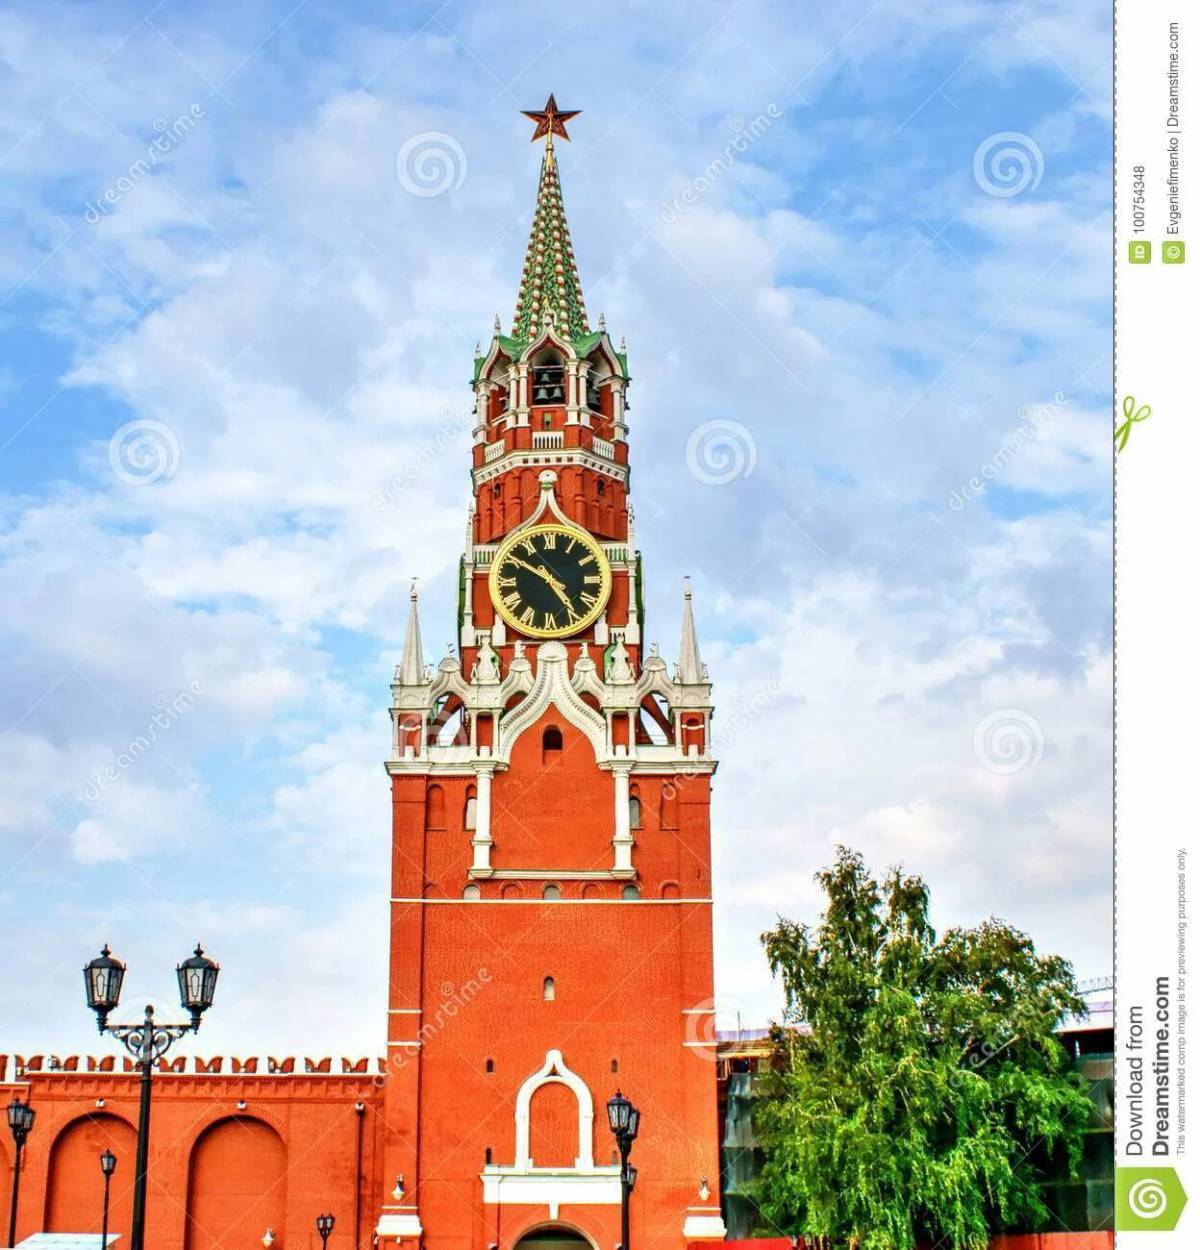 спасская башня московский кремль старые